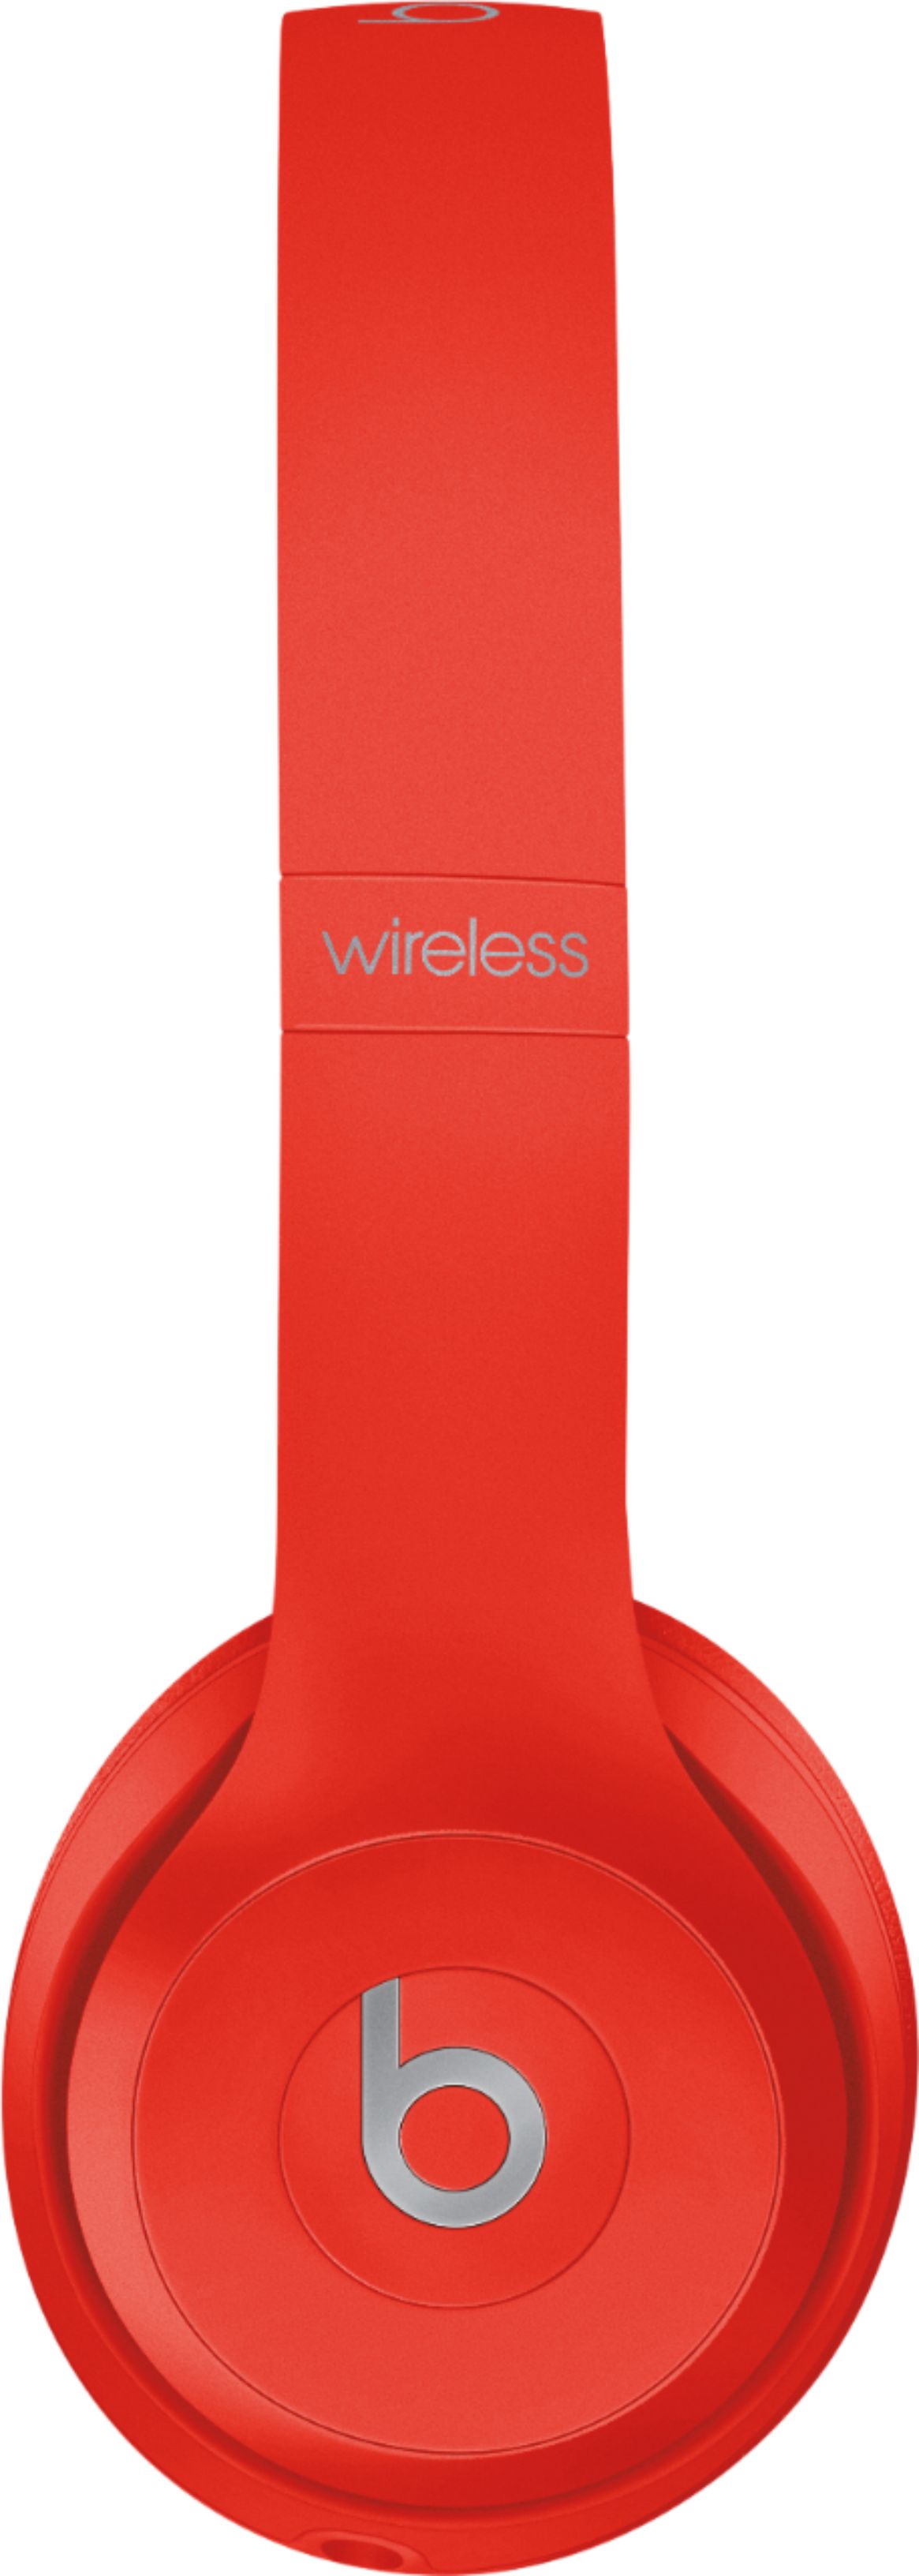 オーディオ機器 ヘッドフォン Beats by Dr. Dre Solo³ Wireless On-Ear Headphones (PRODUCT)RED 